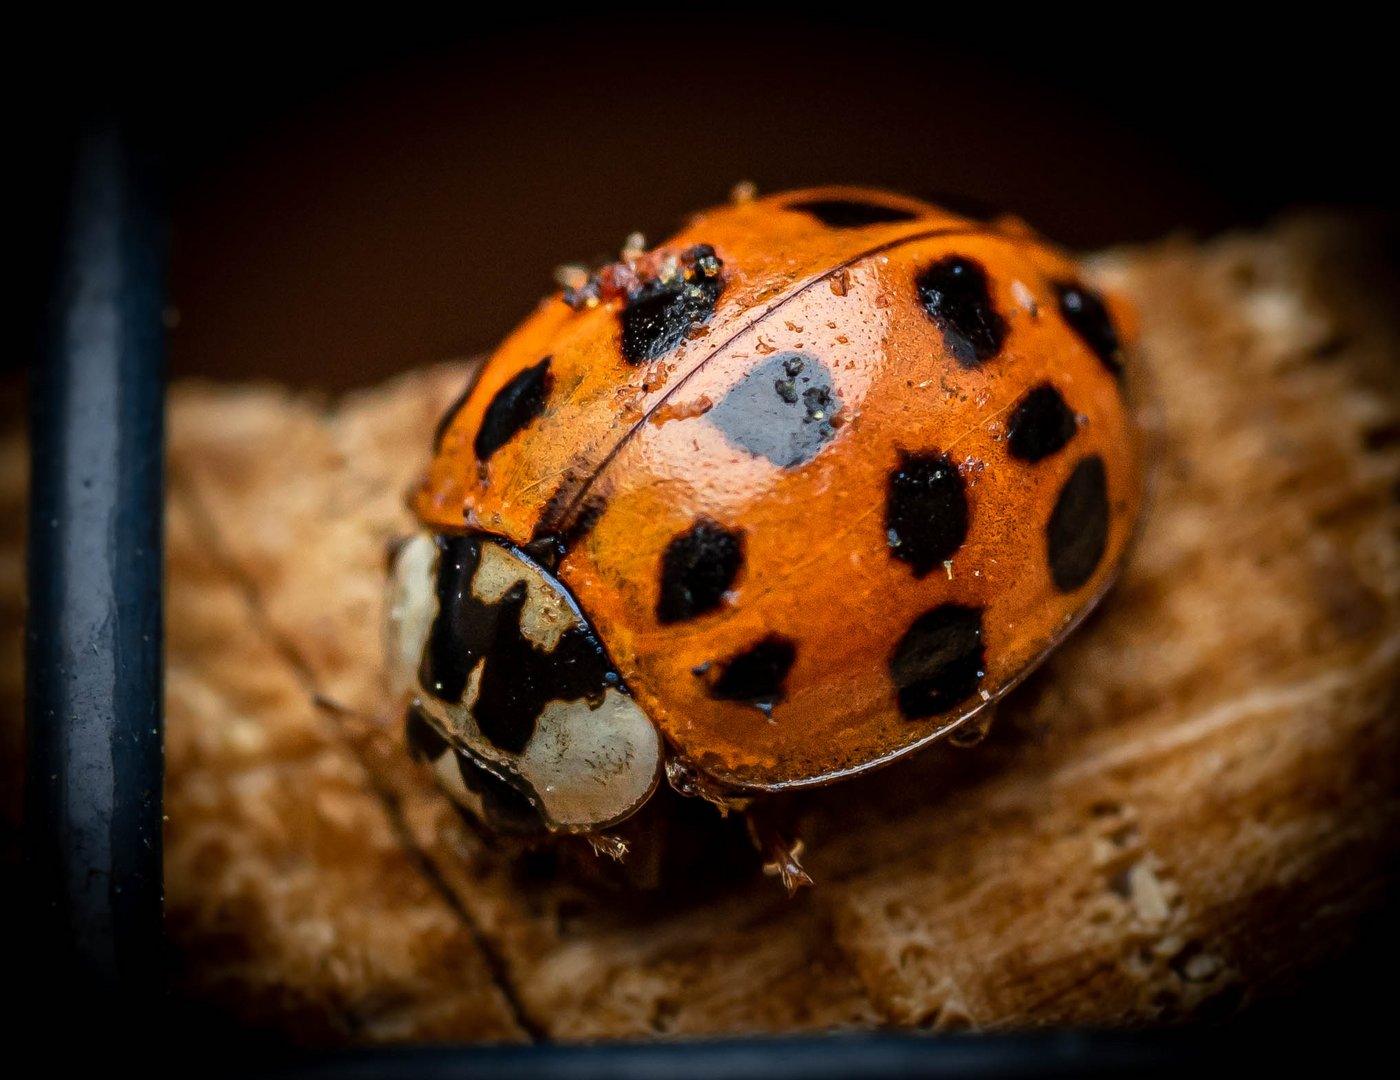 Ladybug - Coccinellidae - Marienkäfer